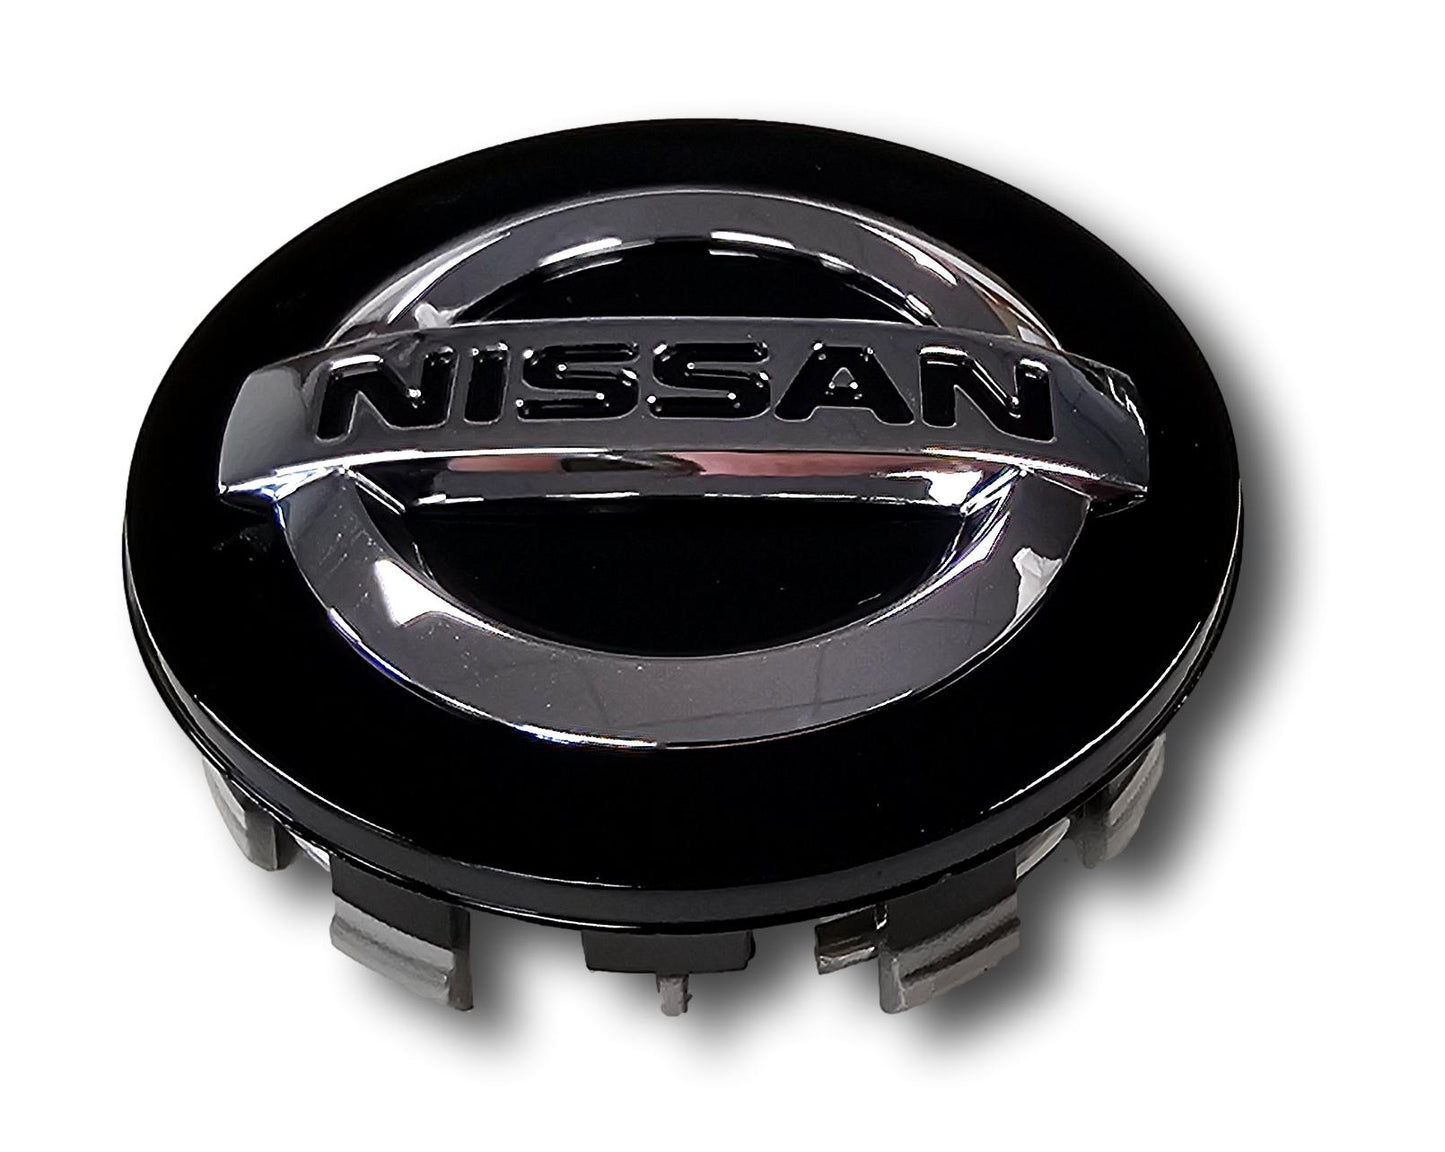 Véritable nouveau capuchon de centre de roue Nissan noir, ensemble de quatre 40342 BR02A